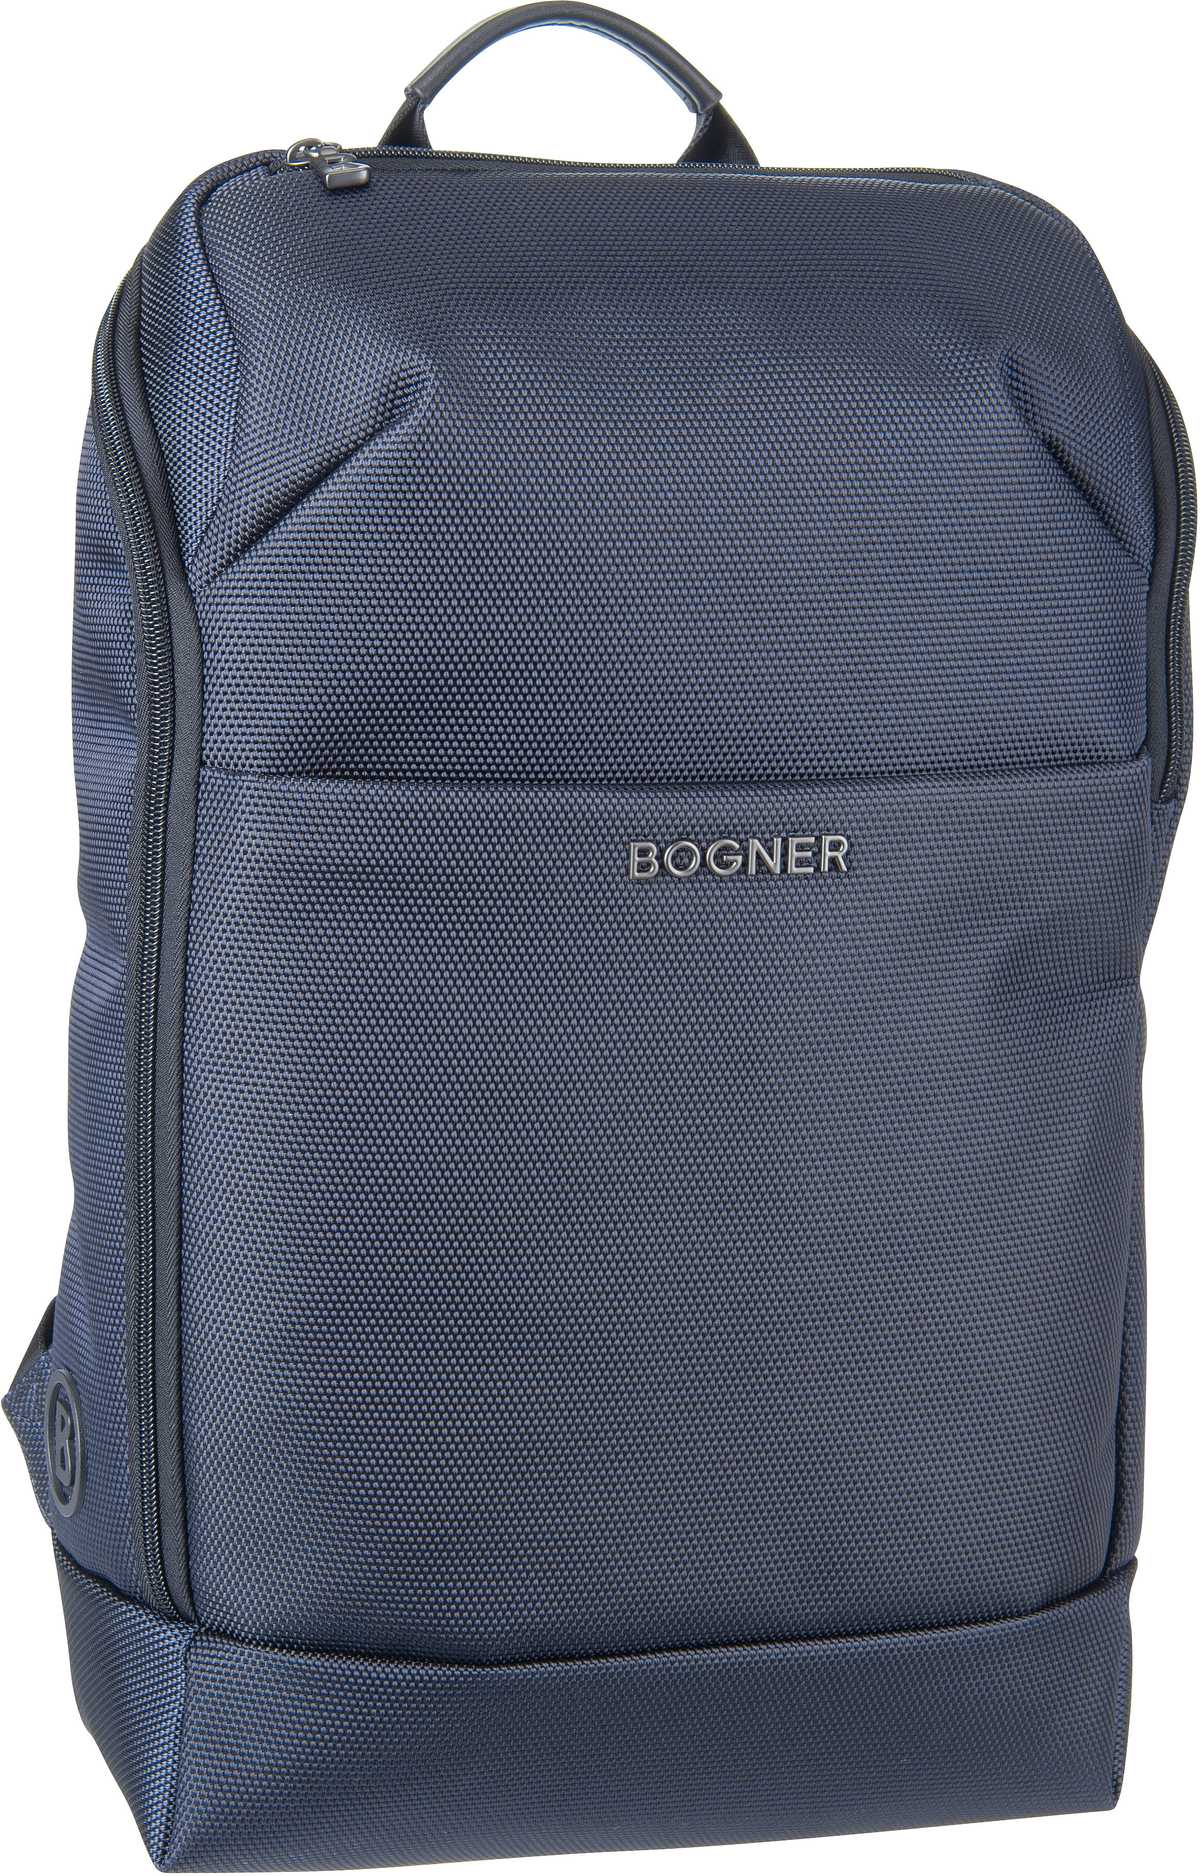 Bogner Keystone Lennard Backpack MVZ  in Dark Blue (18.4 Liter), Rucksack / Backpack